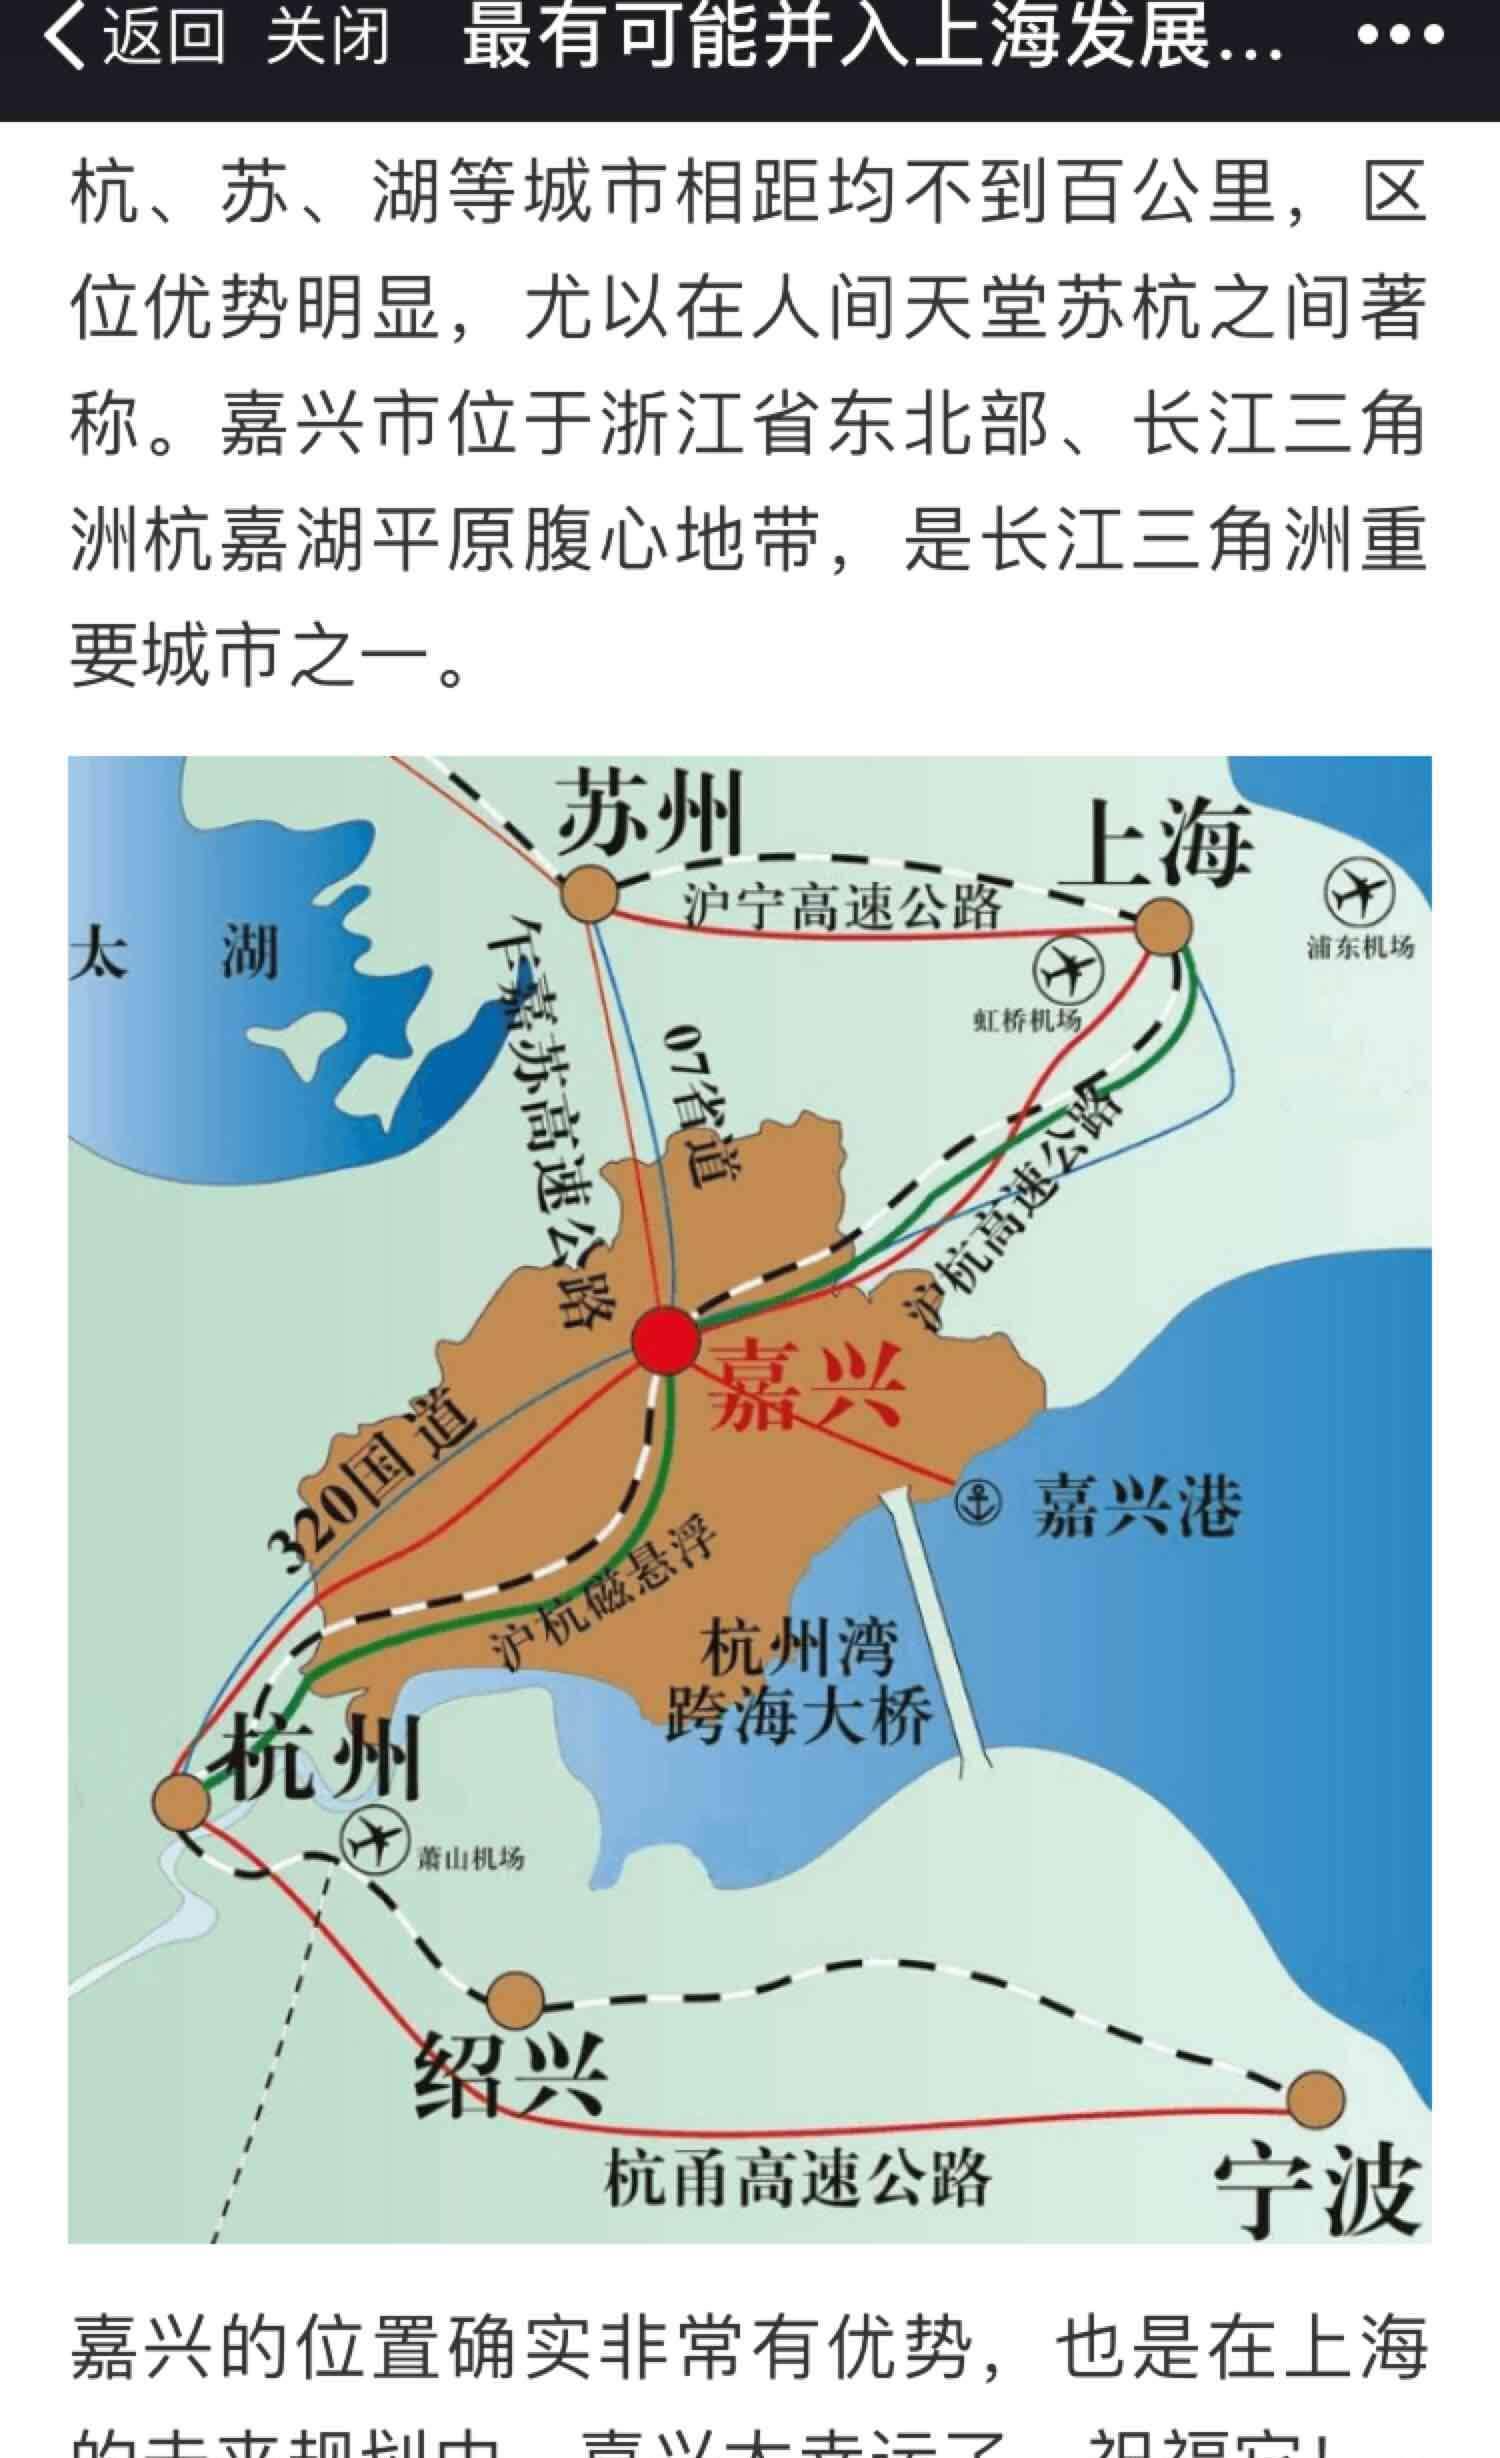 上海与浙江嘉兴地图图片